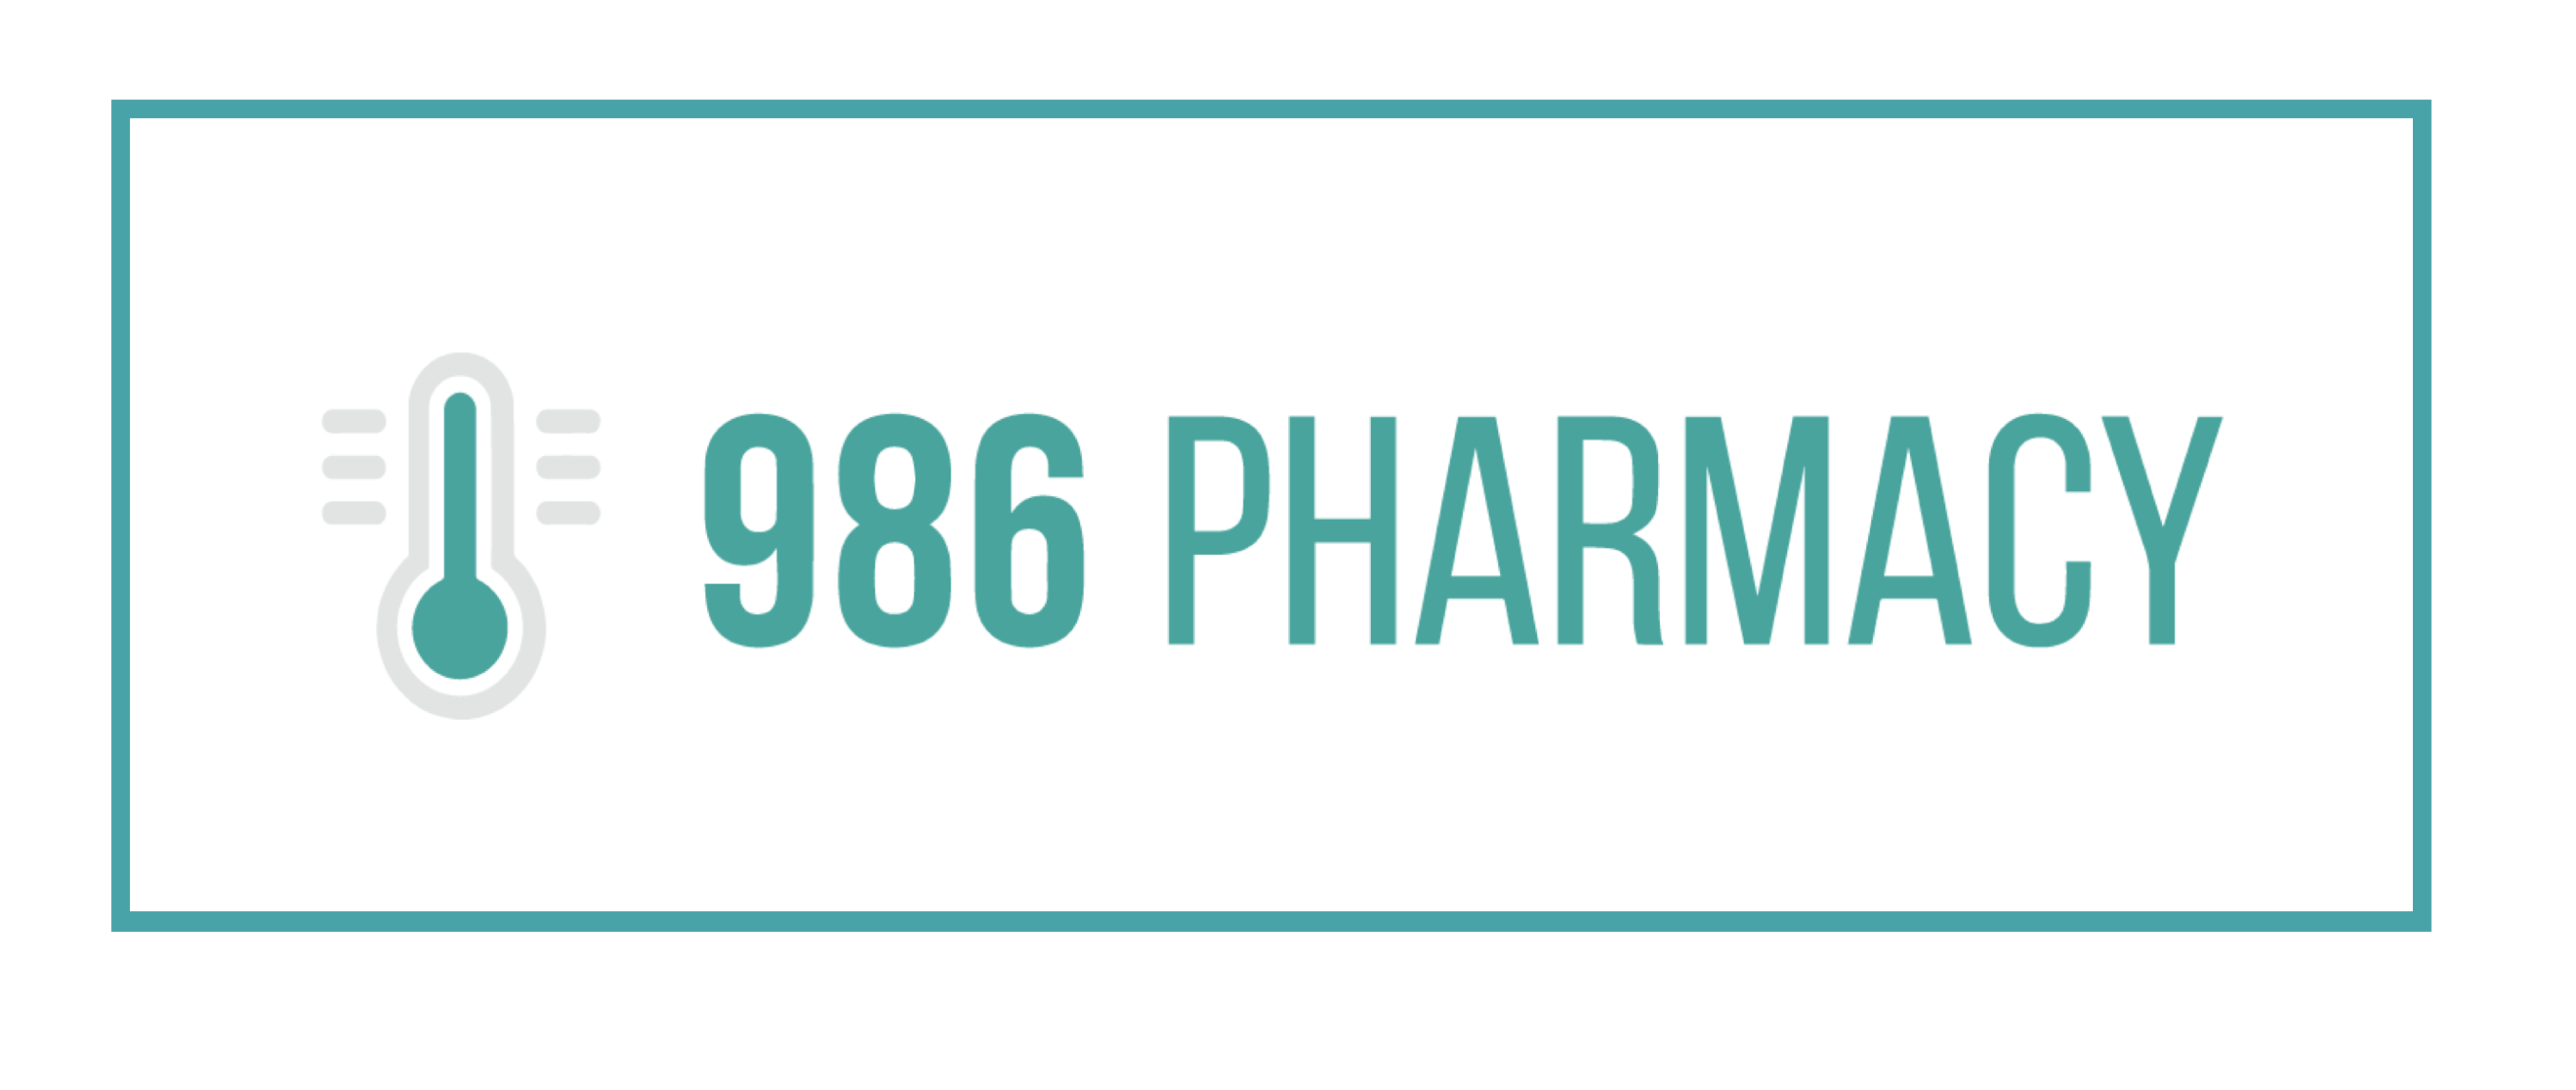 The 986 Pharmacy Philosophy with co-Founder Dr. Ken Thai, PharmD.